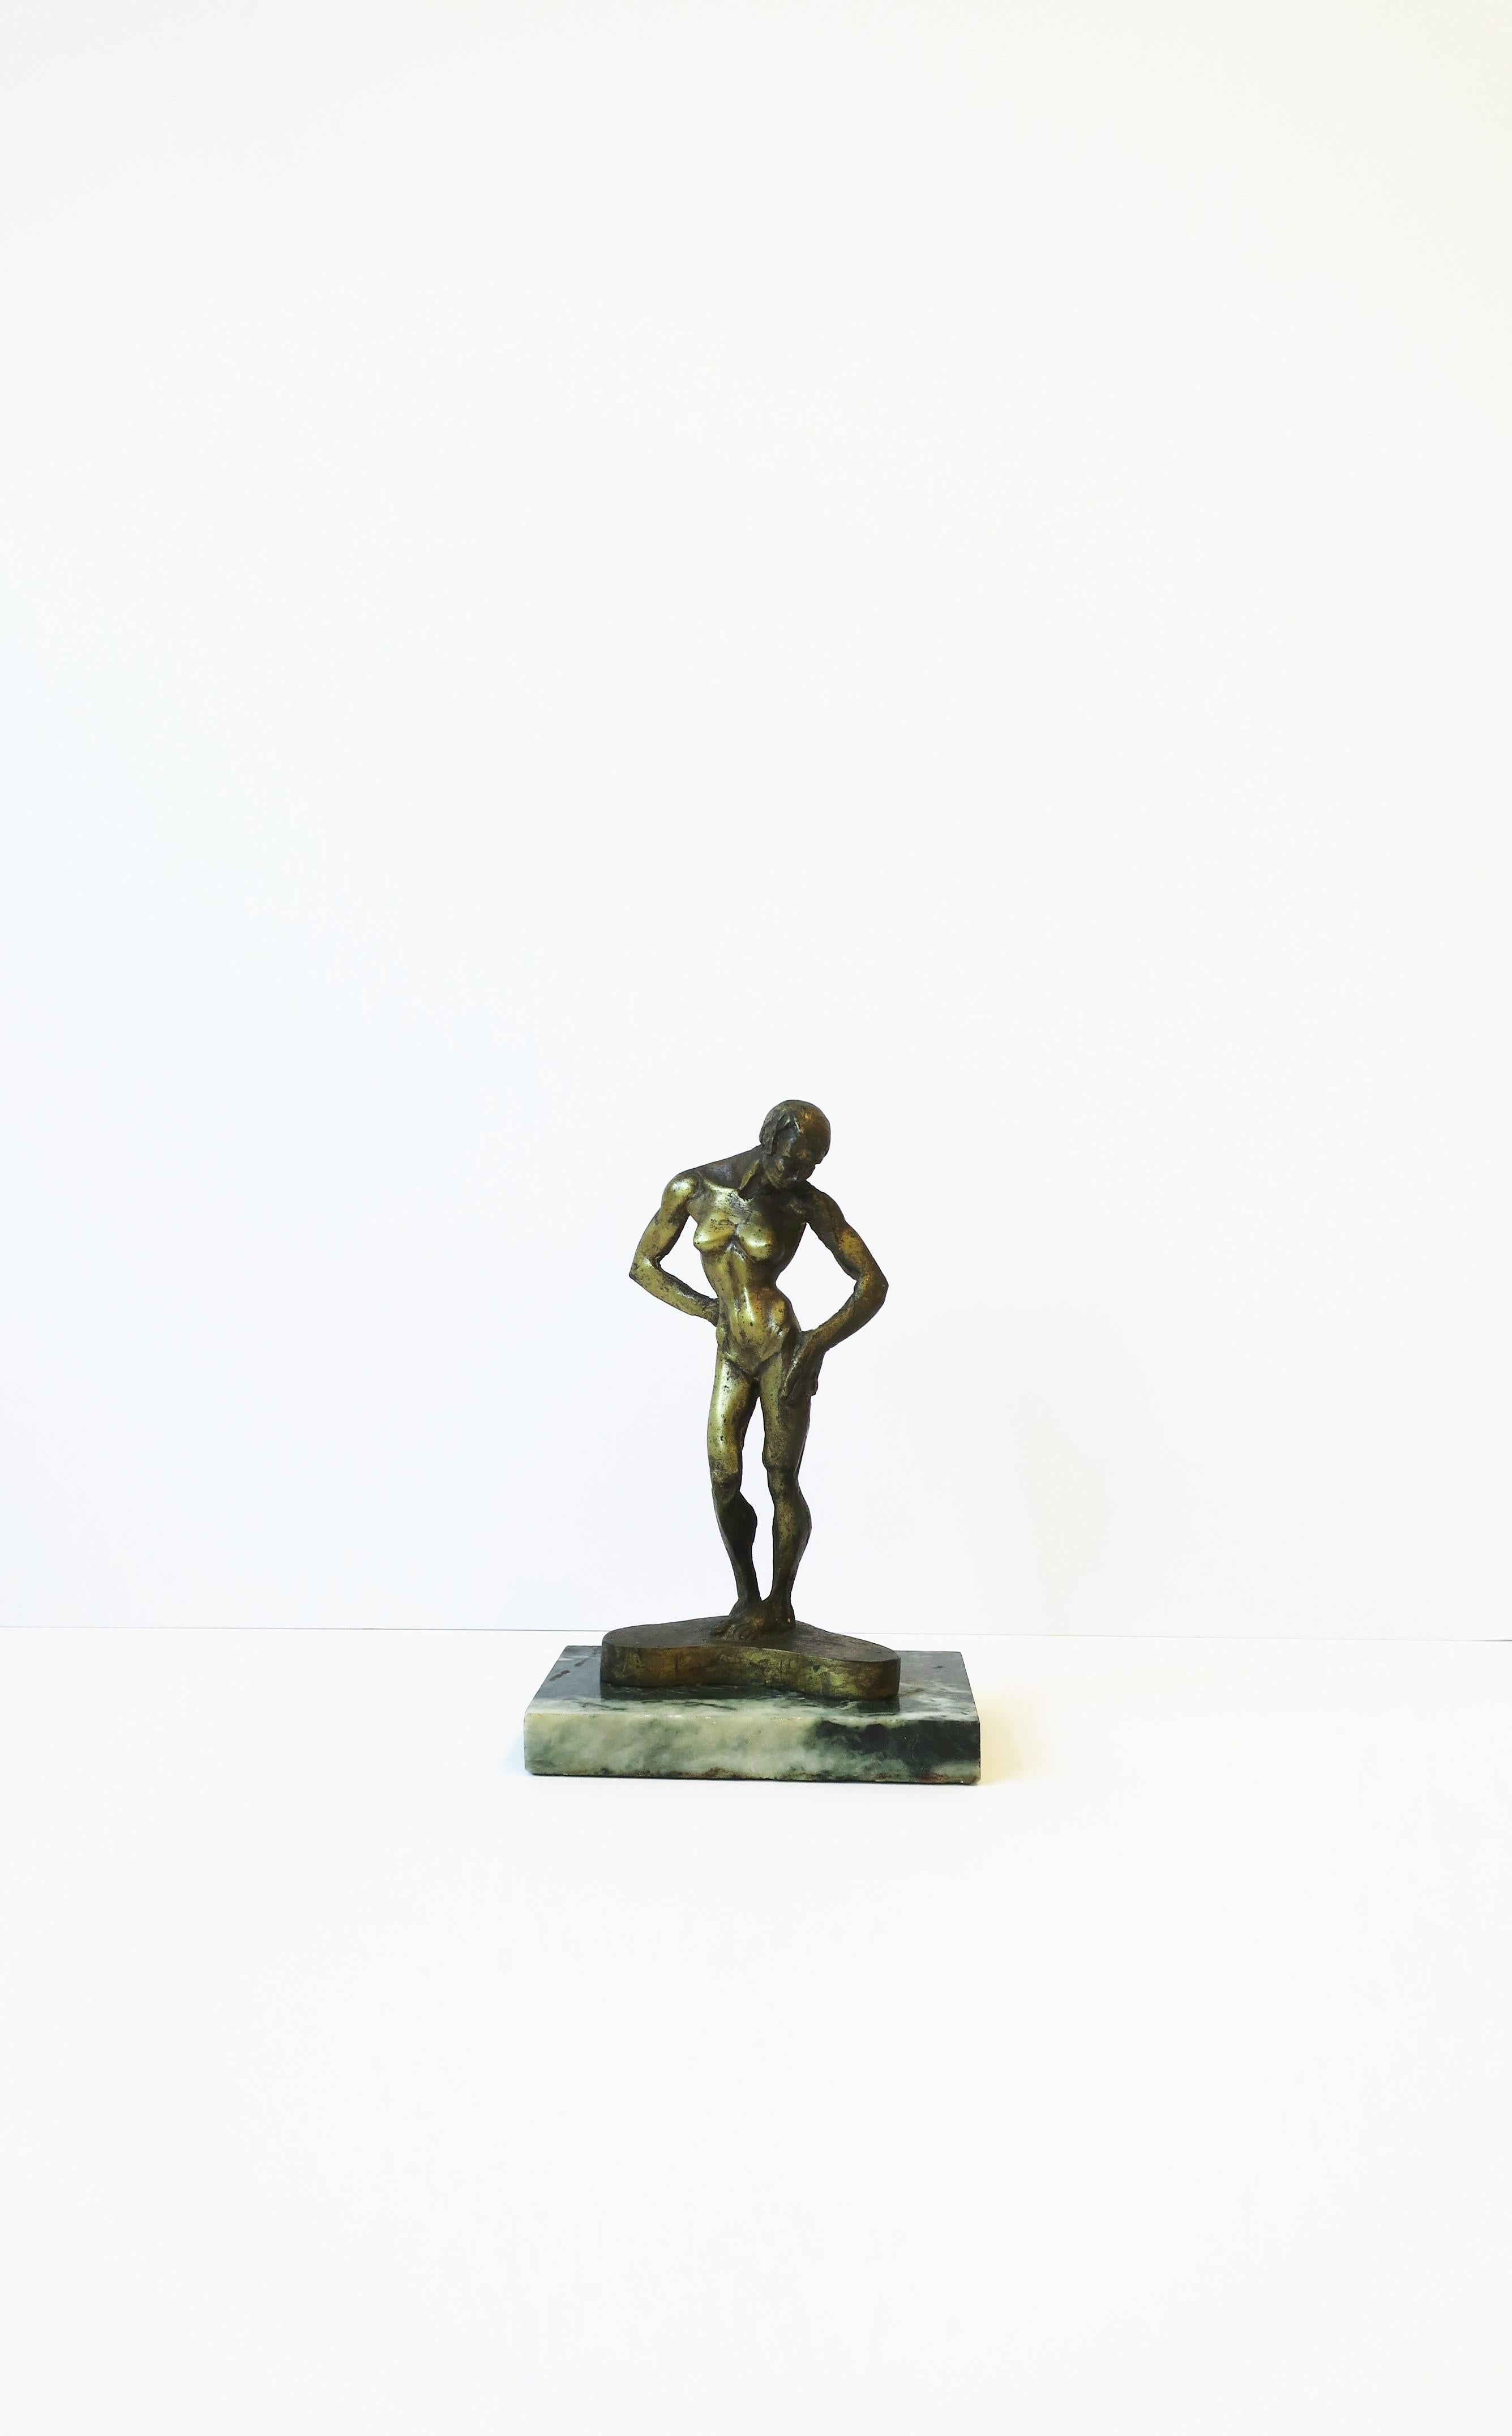 Eine schöne, signierte und nummerierte figürliche Bronzeskulptur einer Frau auf einem dunkelgrünen, weiß geäderten Marmorsockel des Bildhauers Michael Shacham, 1977. Eine schön getönte weibliche Bronzeskulptur im Stil des Art déco. Diese Skulptur